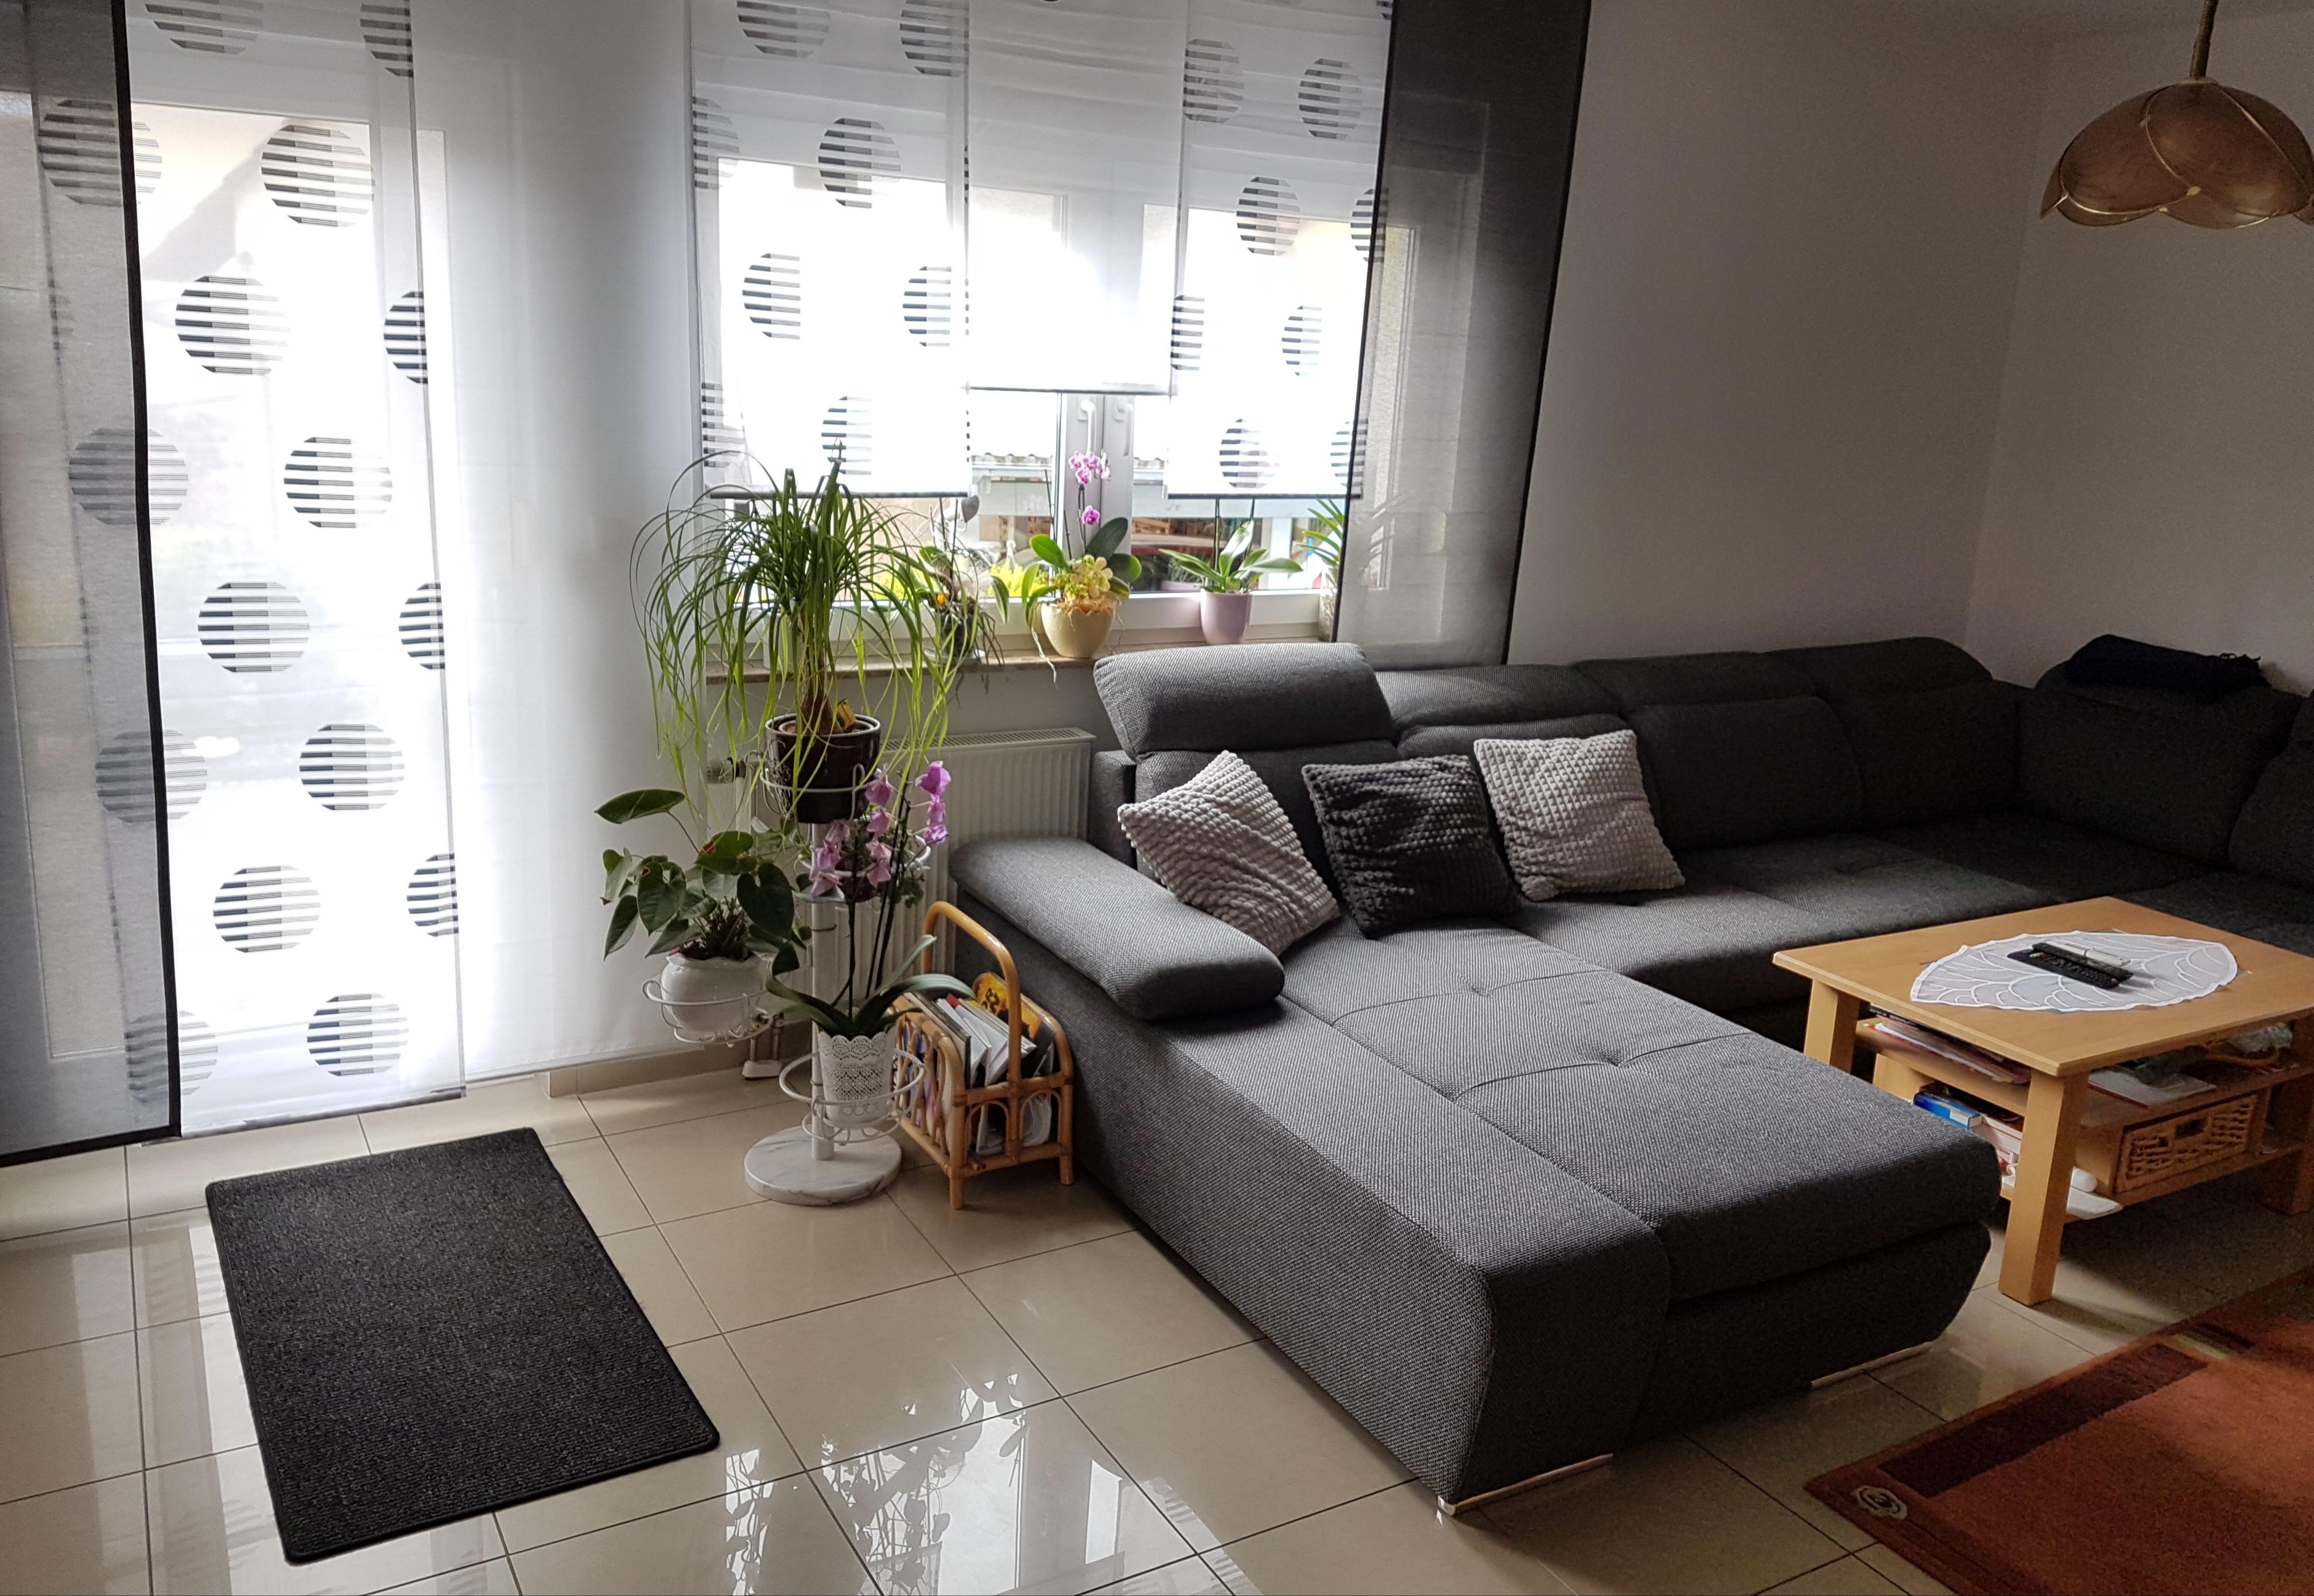 #livingchallenge #wohnzimmergestaltung #wohnzimmer
Neues Sofa, neue Vorhänge. 
Fehlt nur noch ein kleinerer Tisch!
